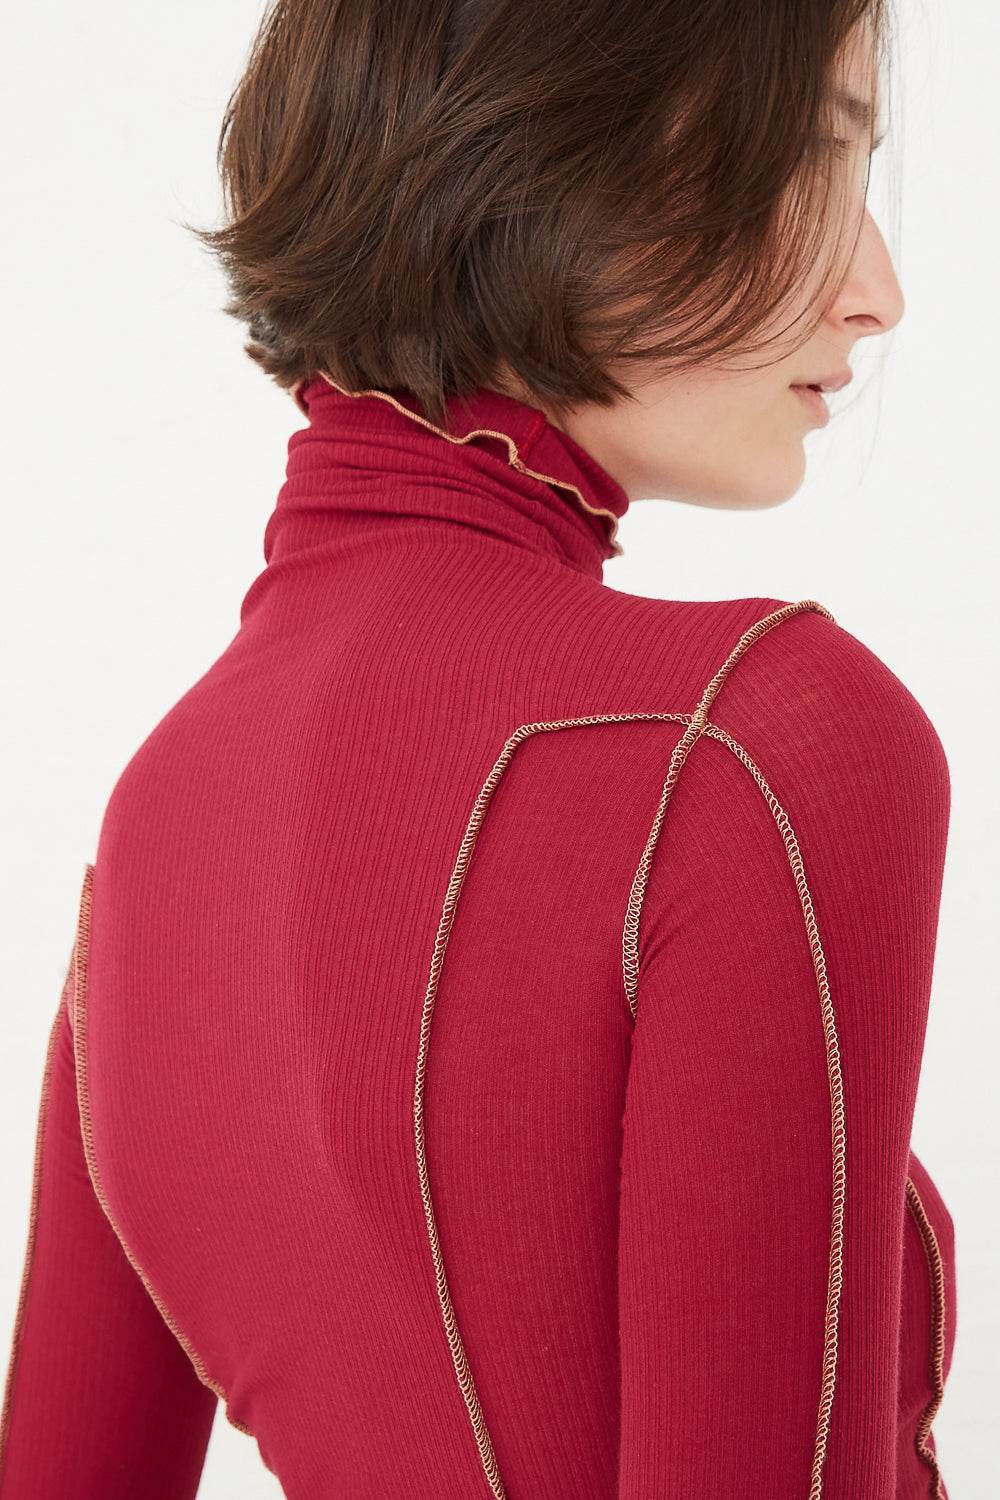 Baserange - Omato Turtleneck in Burned Red shoulder seam detail